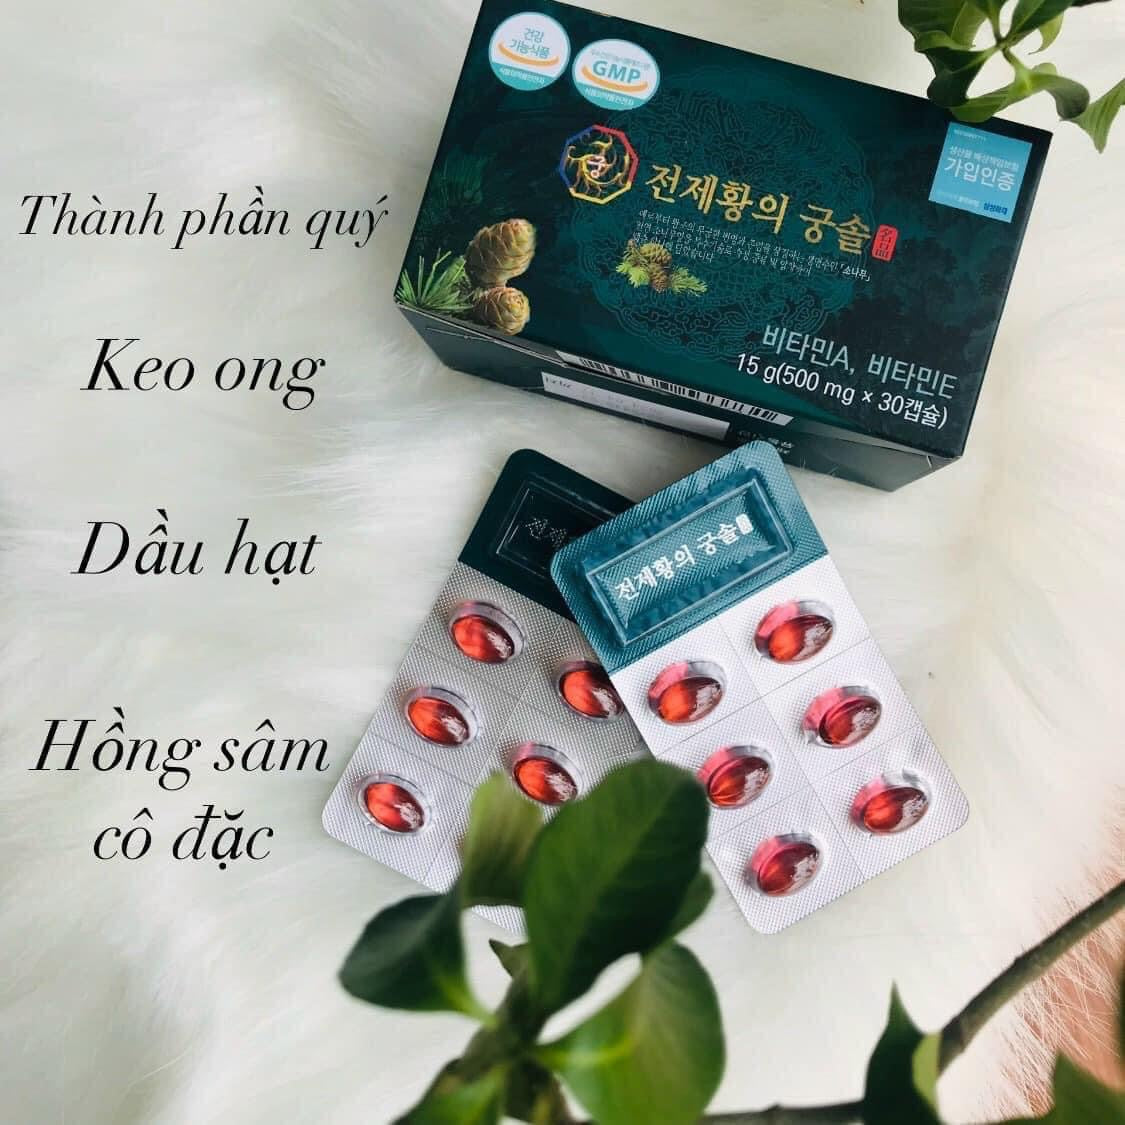 Tinh dau thong do Hoang de Cheon Je Hwang